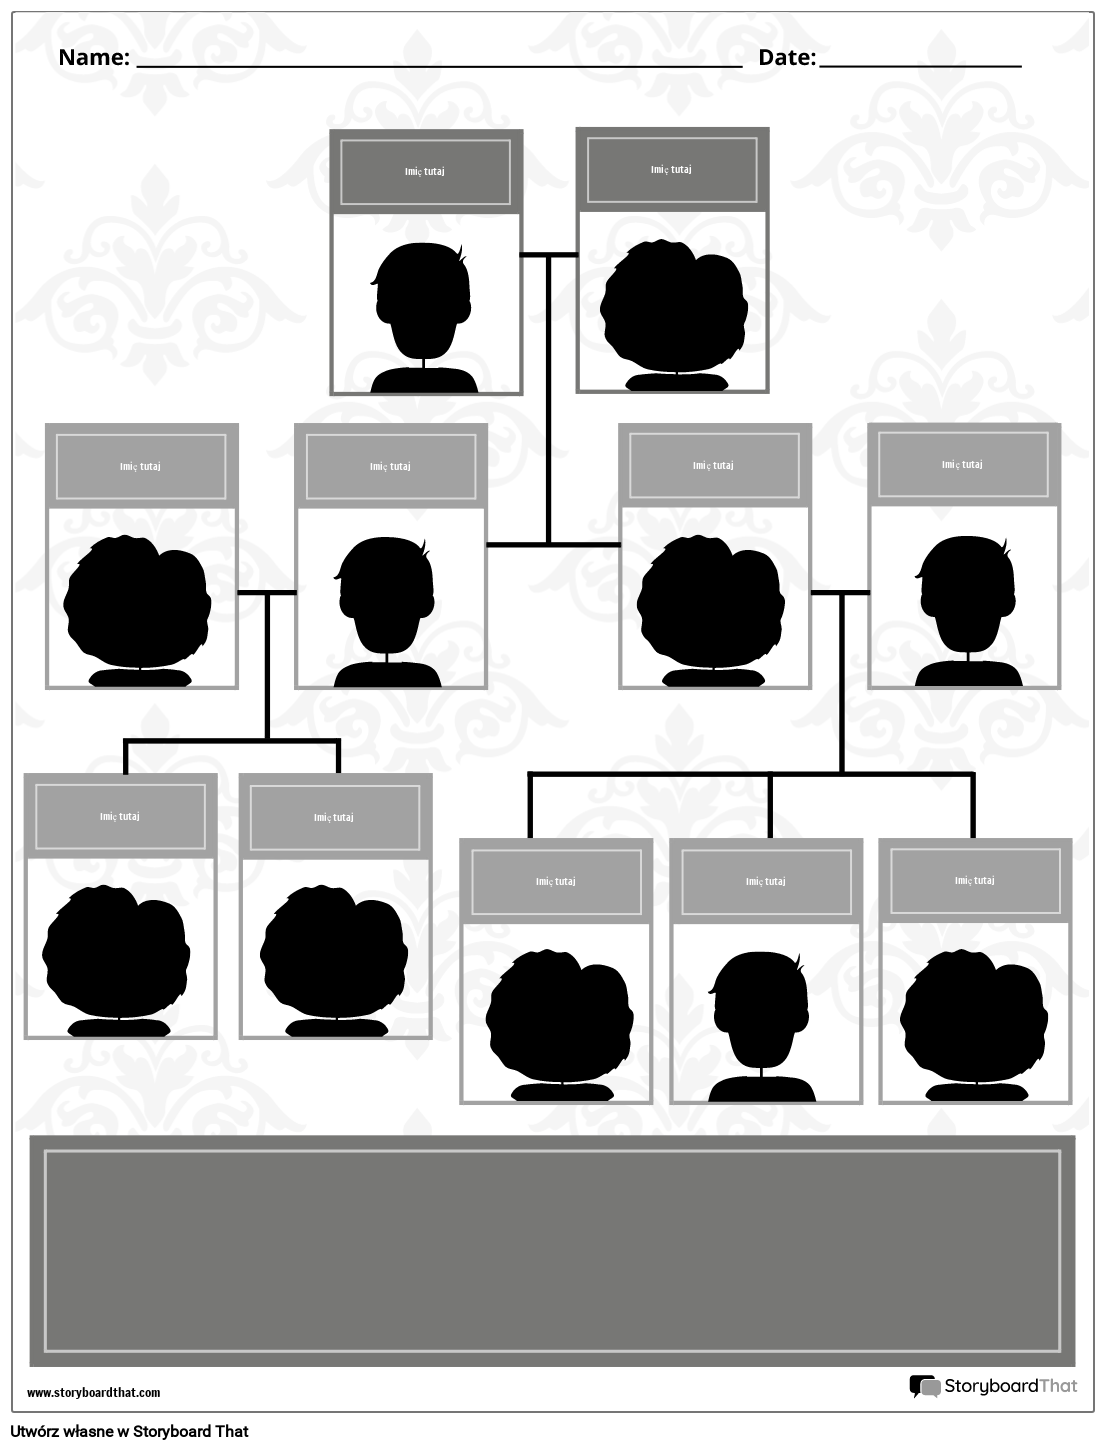 Nowy szablon drzewa genealogicznego ED 2 (czarno-biały)